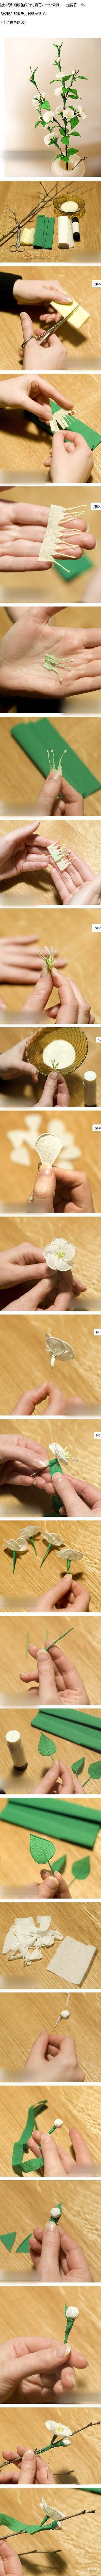 仿真花的手工制作教程图解 皱纹纸与细铁丝的简单结合~